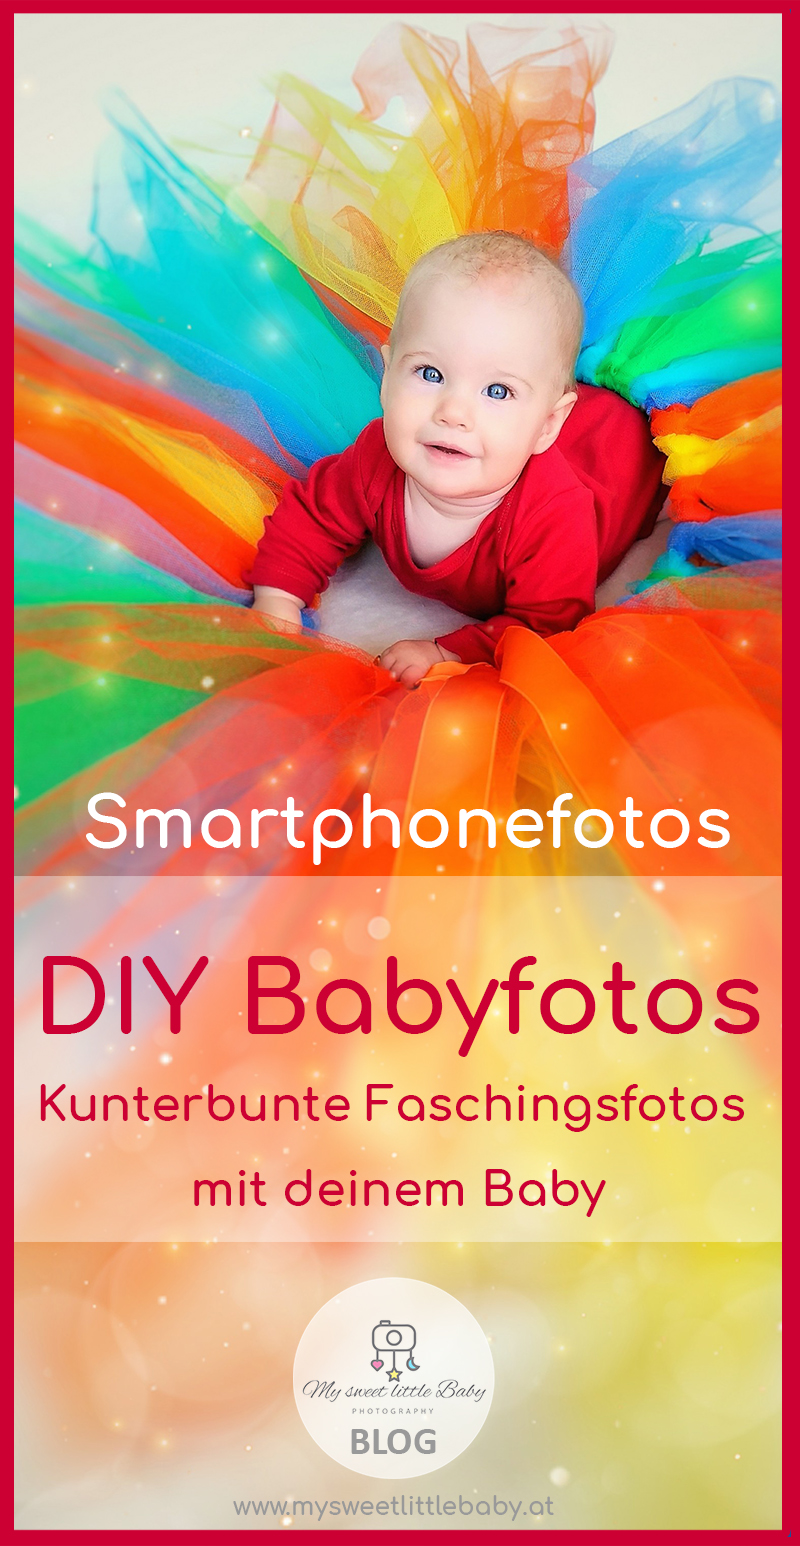 DIY Babyfotos! Kunterbunte Faschingsfotos mit deinem Baby - Barbara Lachner - Autorin und Fotografin - Barbara Lachner Blog-Diese 11 Dinge benötigst du für dein kunterbuntes Faschingsfotoshooting | Vorbereitung | Fotoshooting | Bildbearbeitung